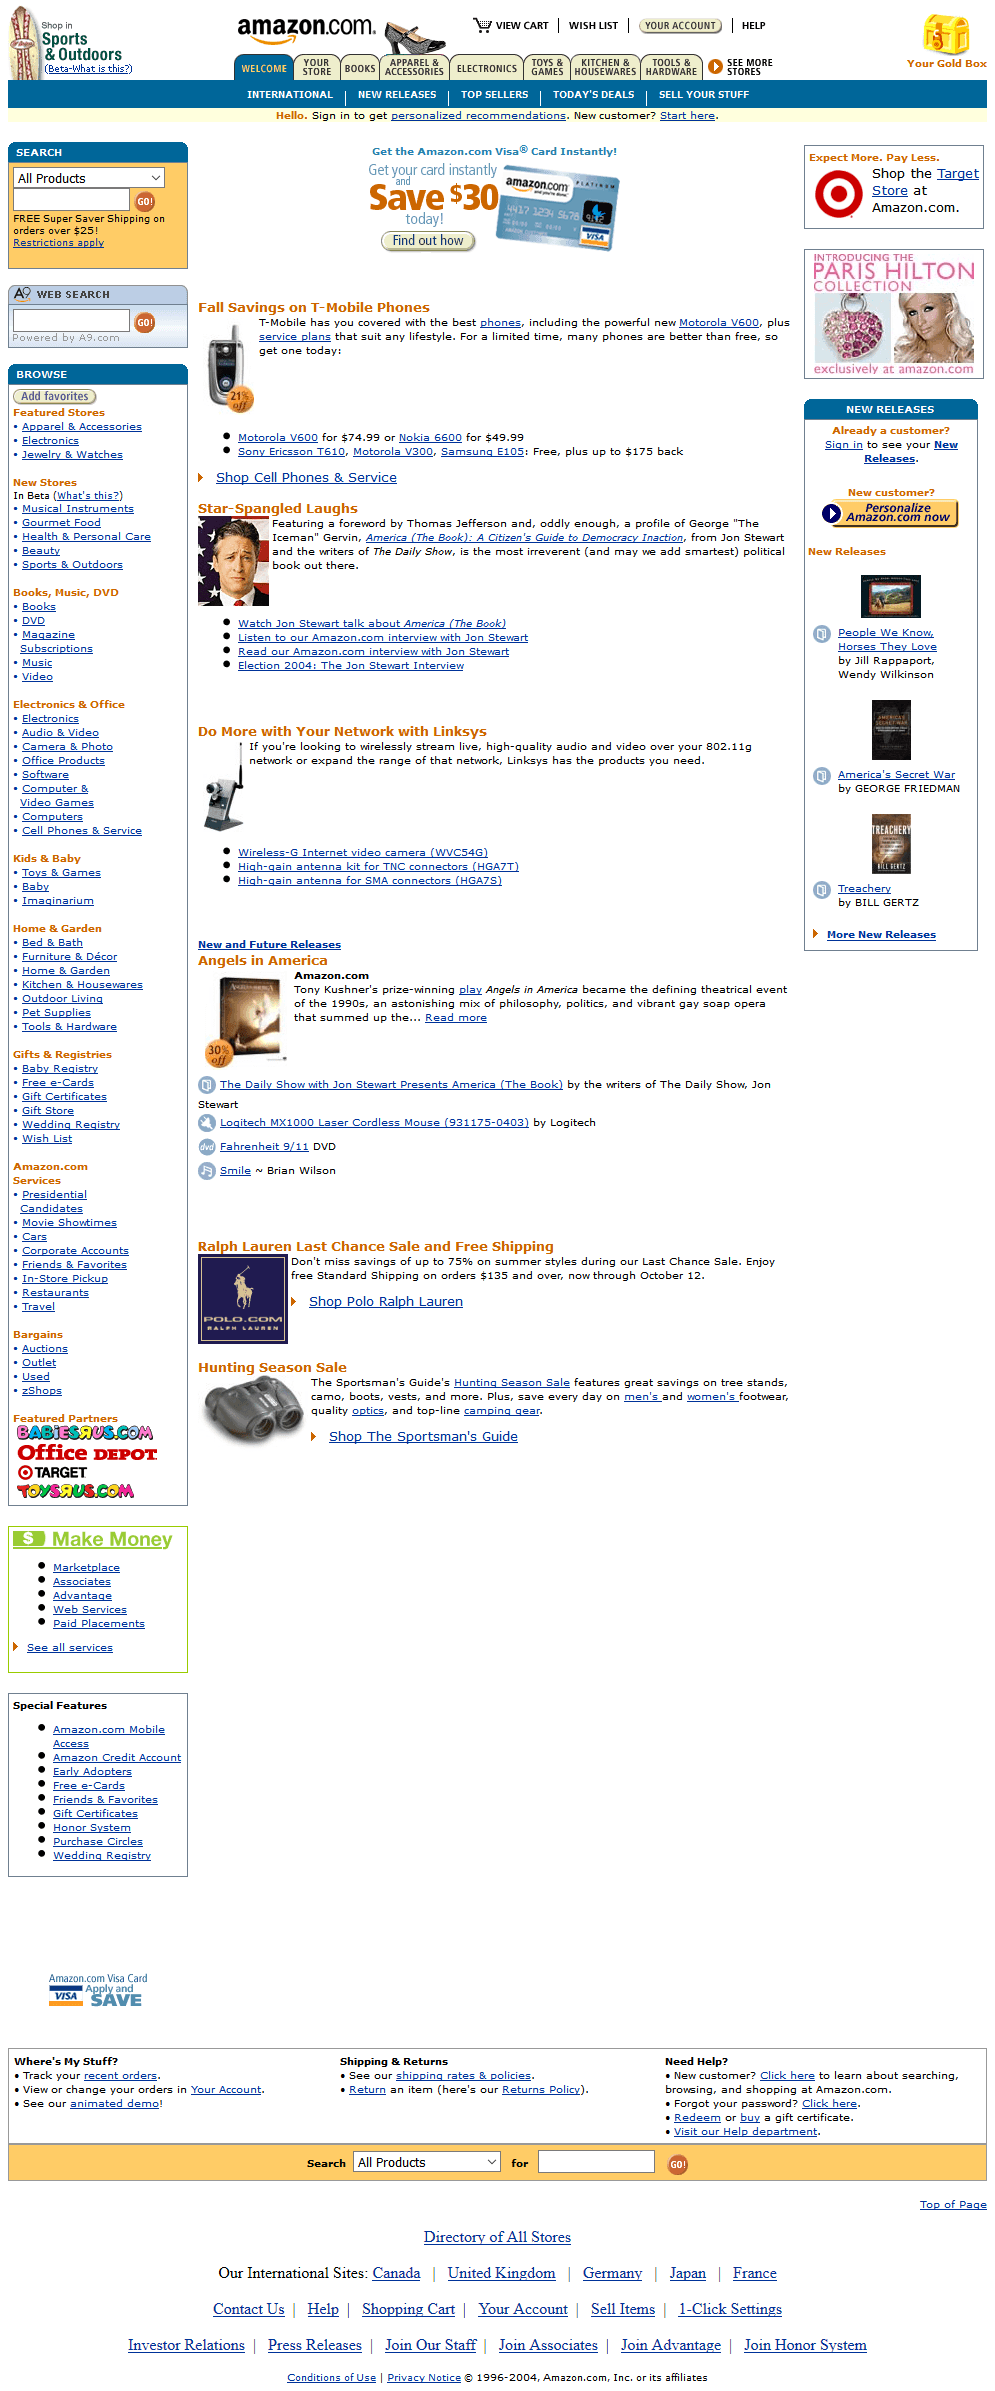 Amazon website in 2004